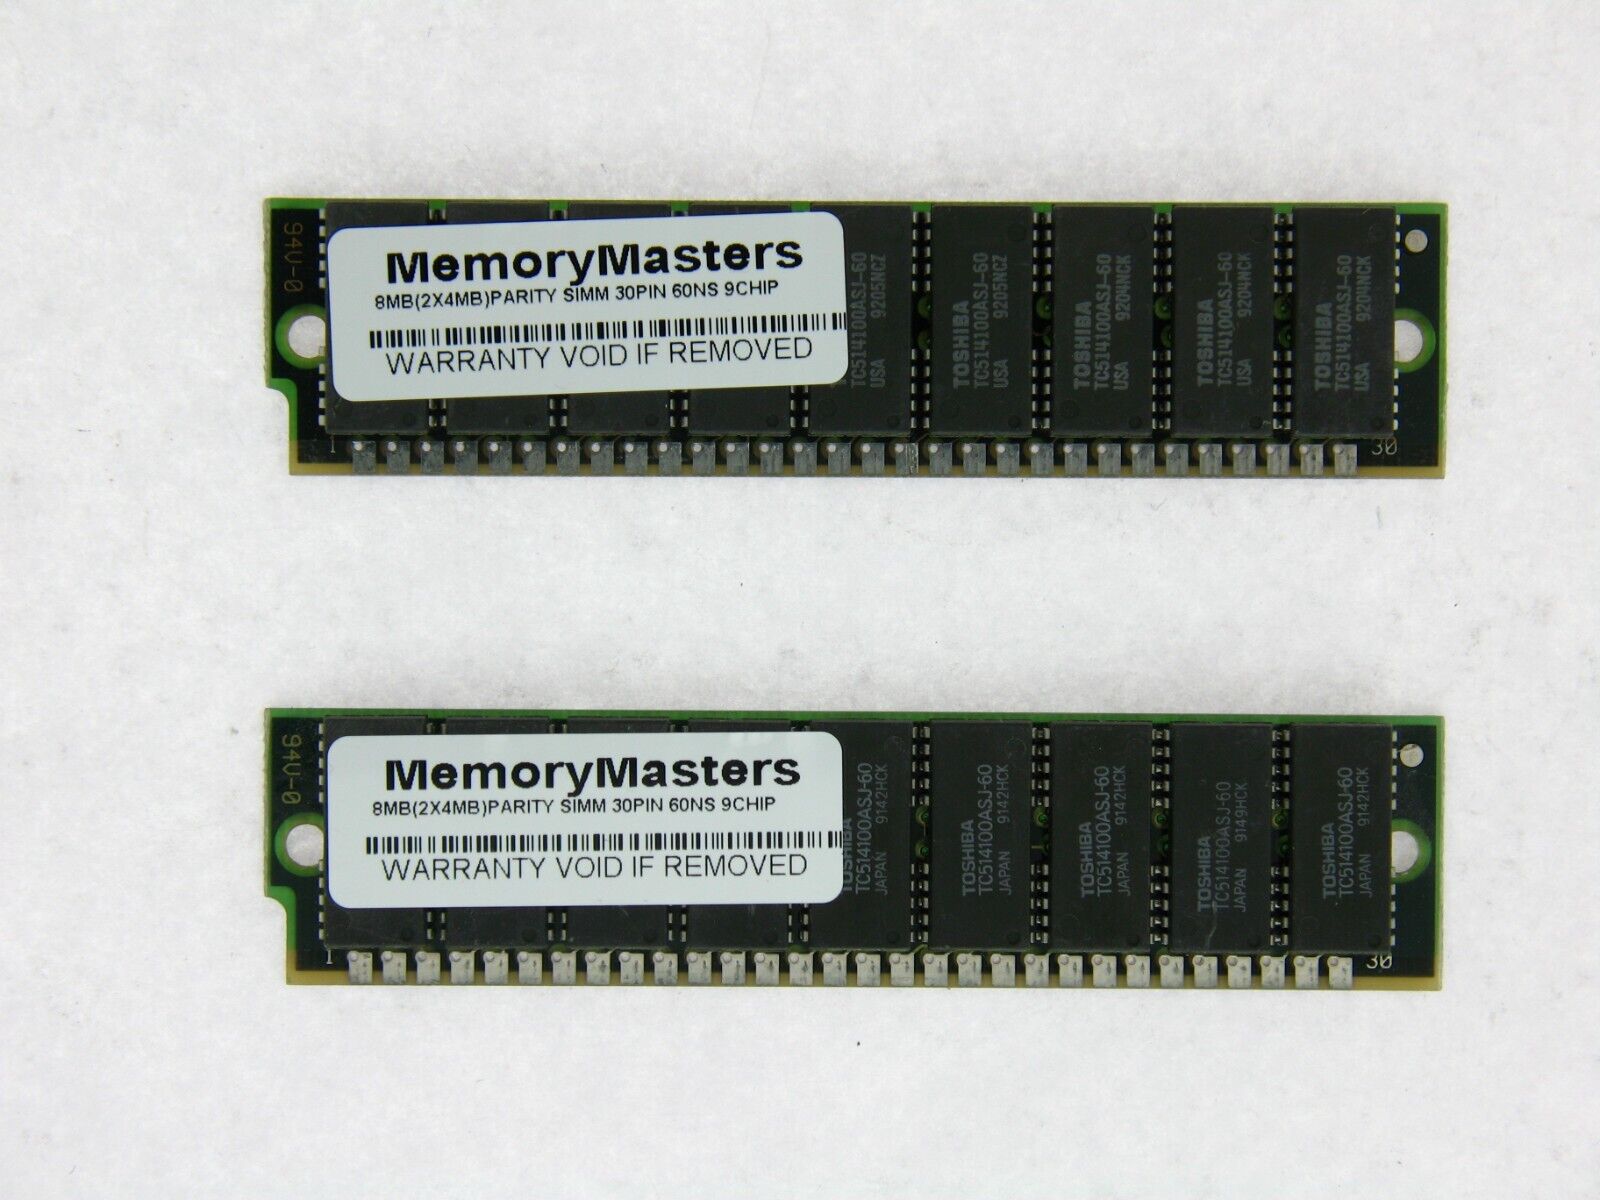 8MB 2x4MB 30-Pin 9-chip 60ns Parity FPM Memory SIMM 